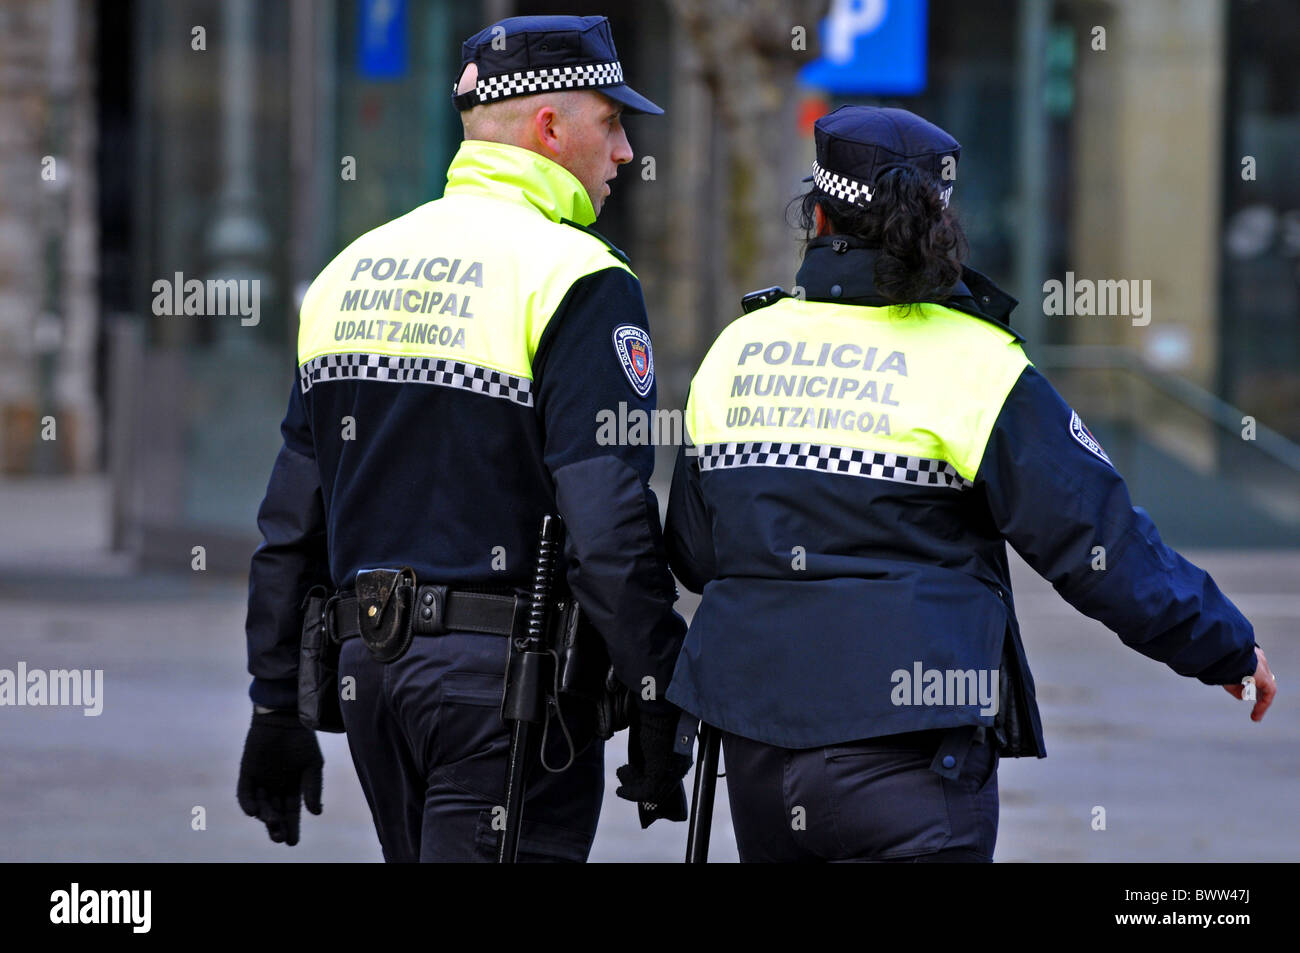 Les fonctionnaires de police dans le Nord de l'Espagne, Europe Banque D'Images